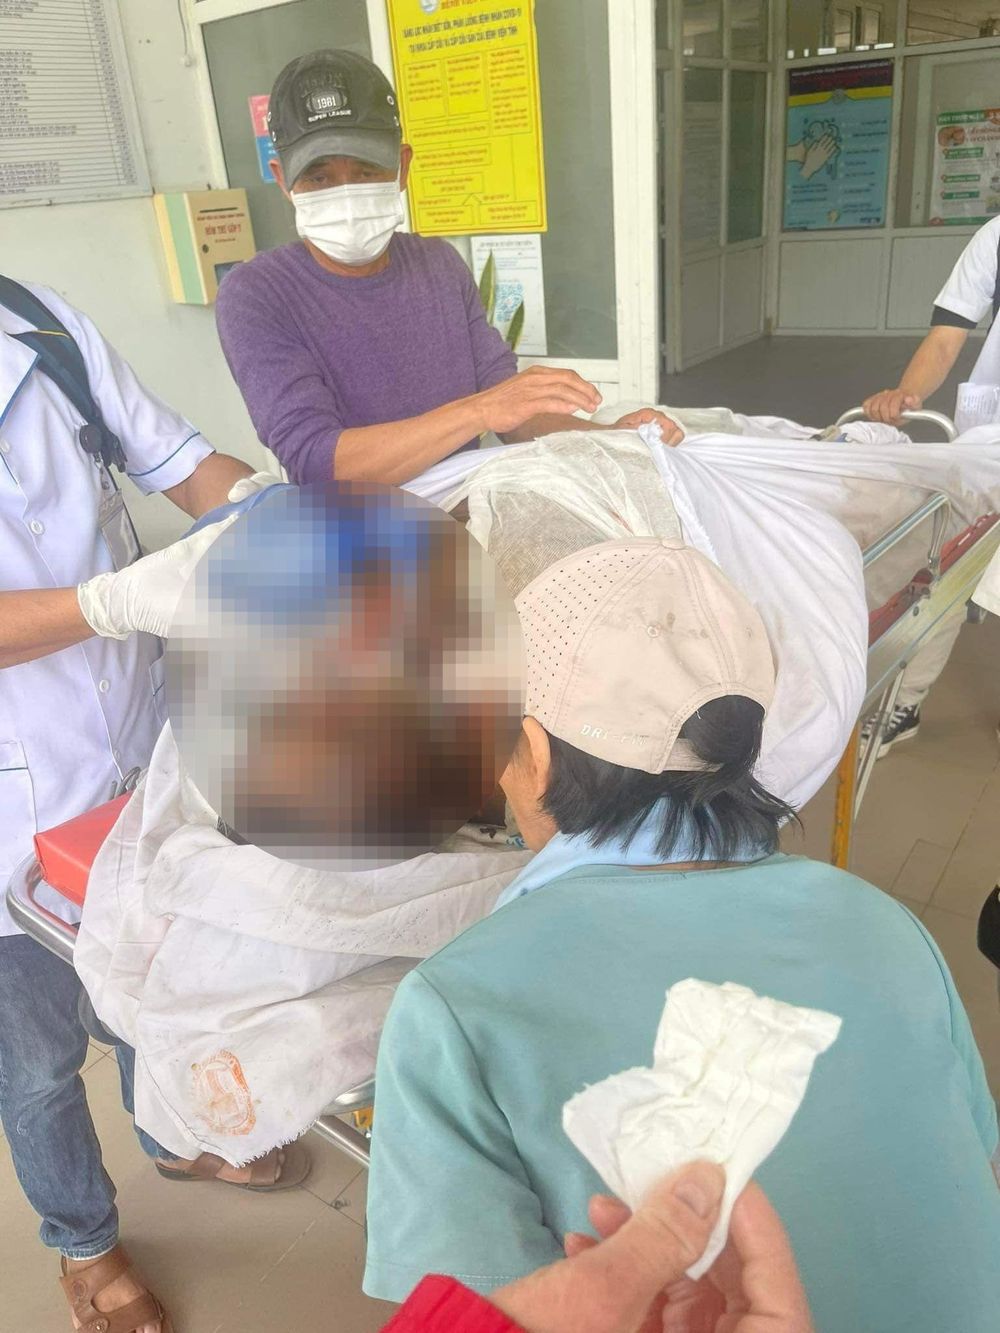 Ninh Thuận: Dùng xăng tự đốt nhà làm 2 người chết, 3 người bị thương nặng - Ảnh 2.